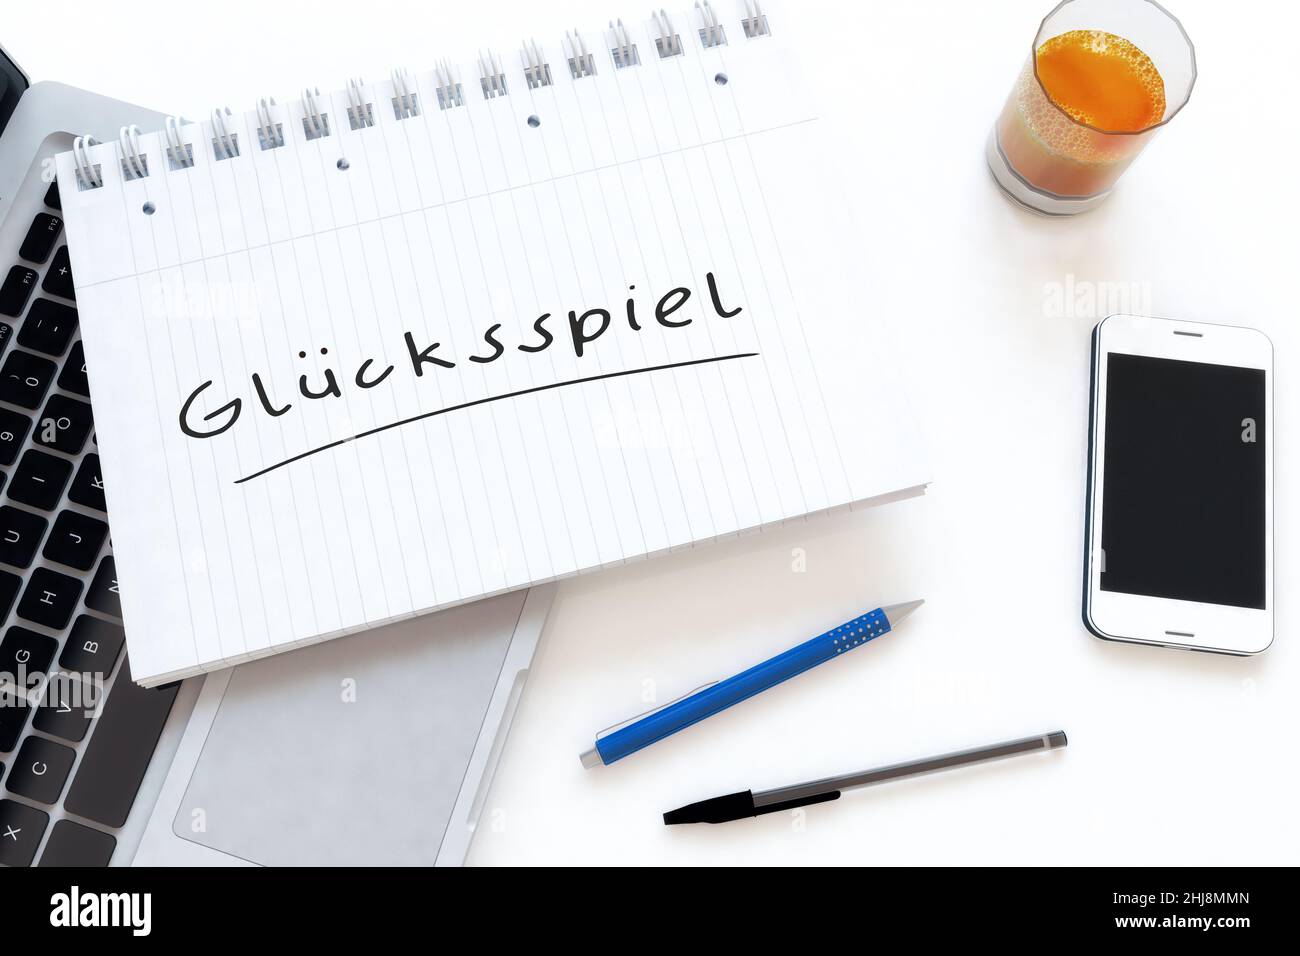 Gluecksspiel - parola tedesca per il gioco d'azzardo o il gioco d'azzardo - testo scritto a mano in un notebook su una scrivania - 3D rappresentazione illustrazione. Foto Stock